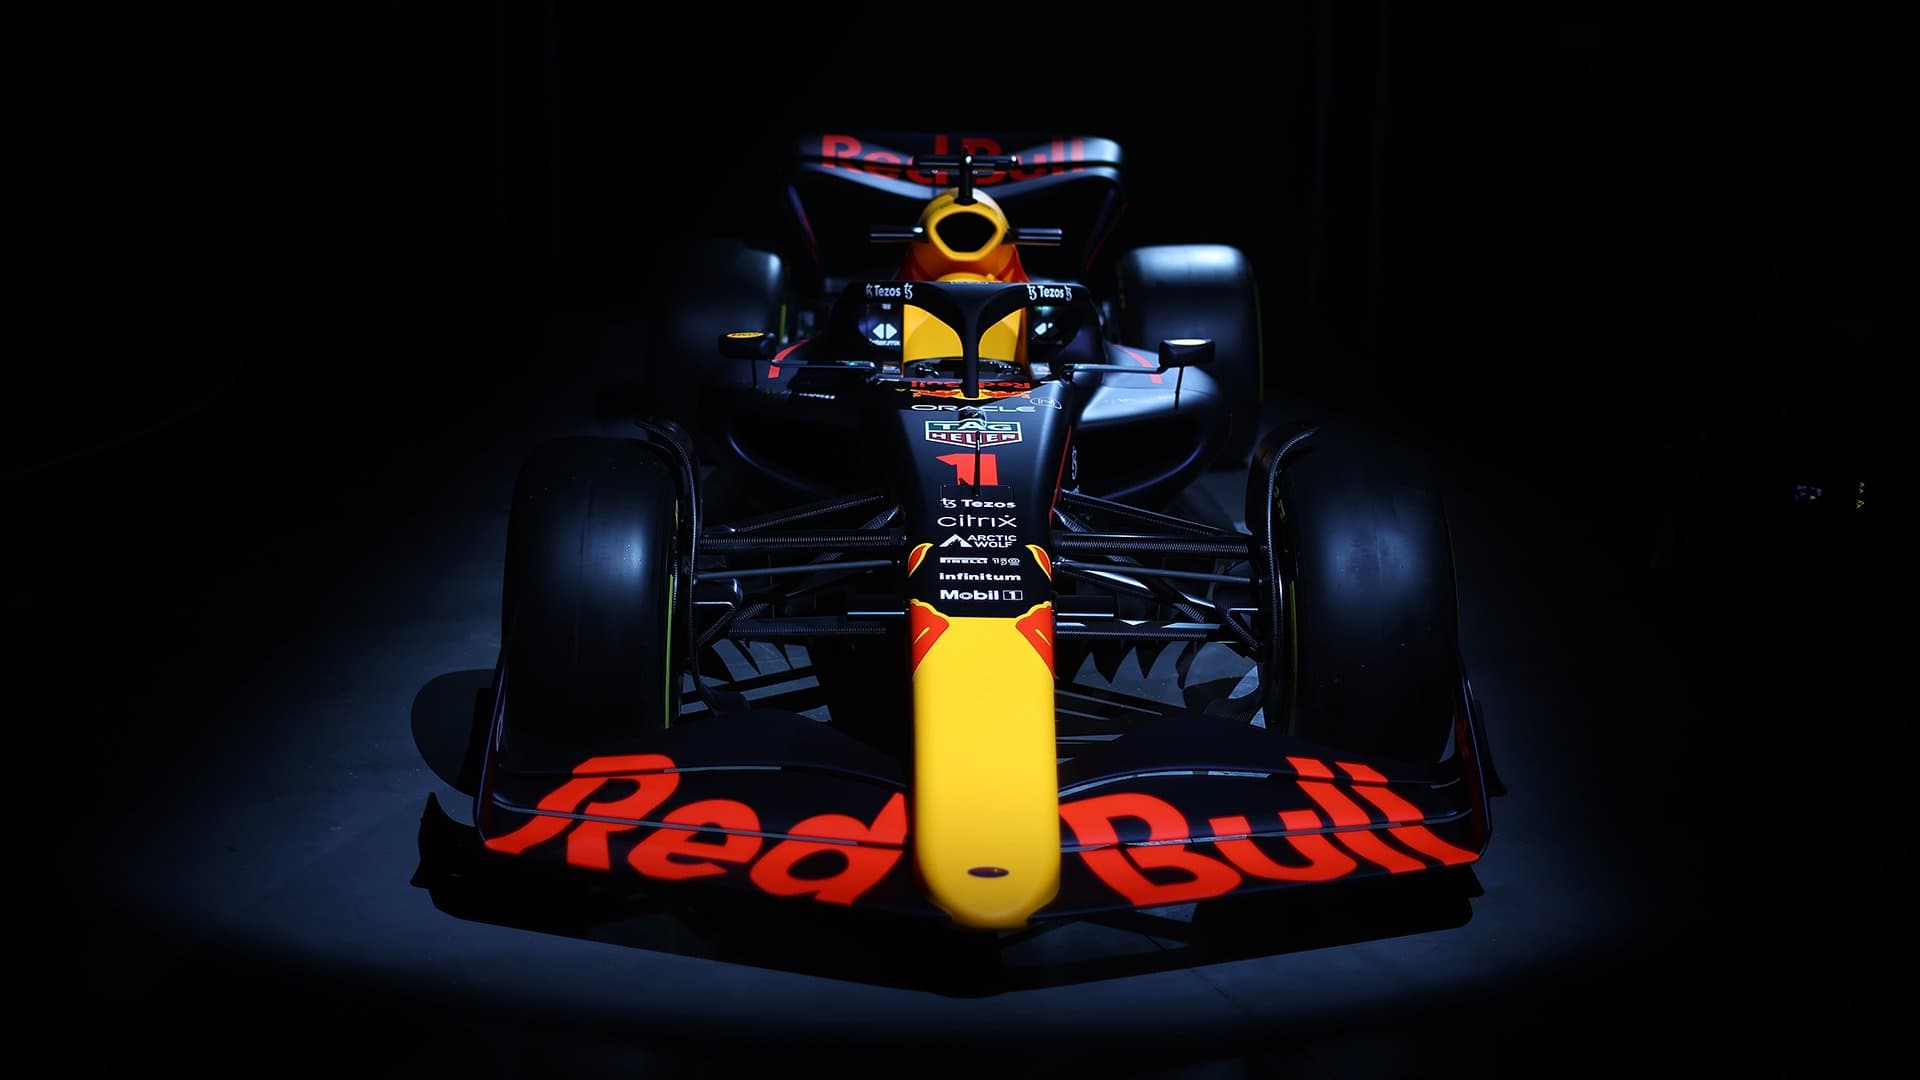 Red Bull Racing 2022 F1 car, Red Bull 2022 Formula 1 car, red bull new formula 1 car, red bull rb18 car 2022, red bull racing rb18 formula 1 car 2022, 2022 formula 1 season red bull car, 2022 formula 1 season rb18